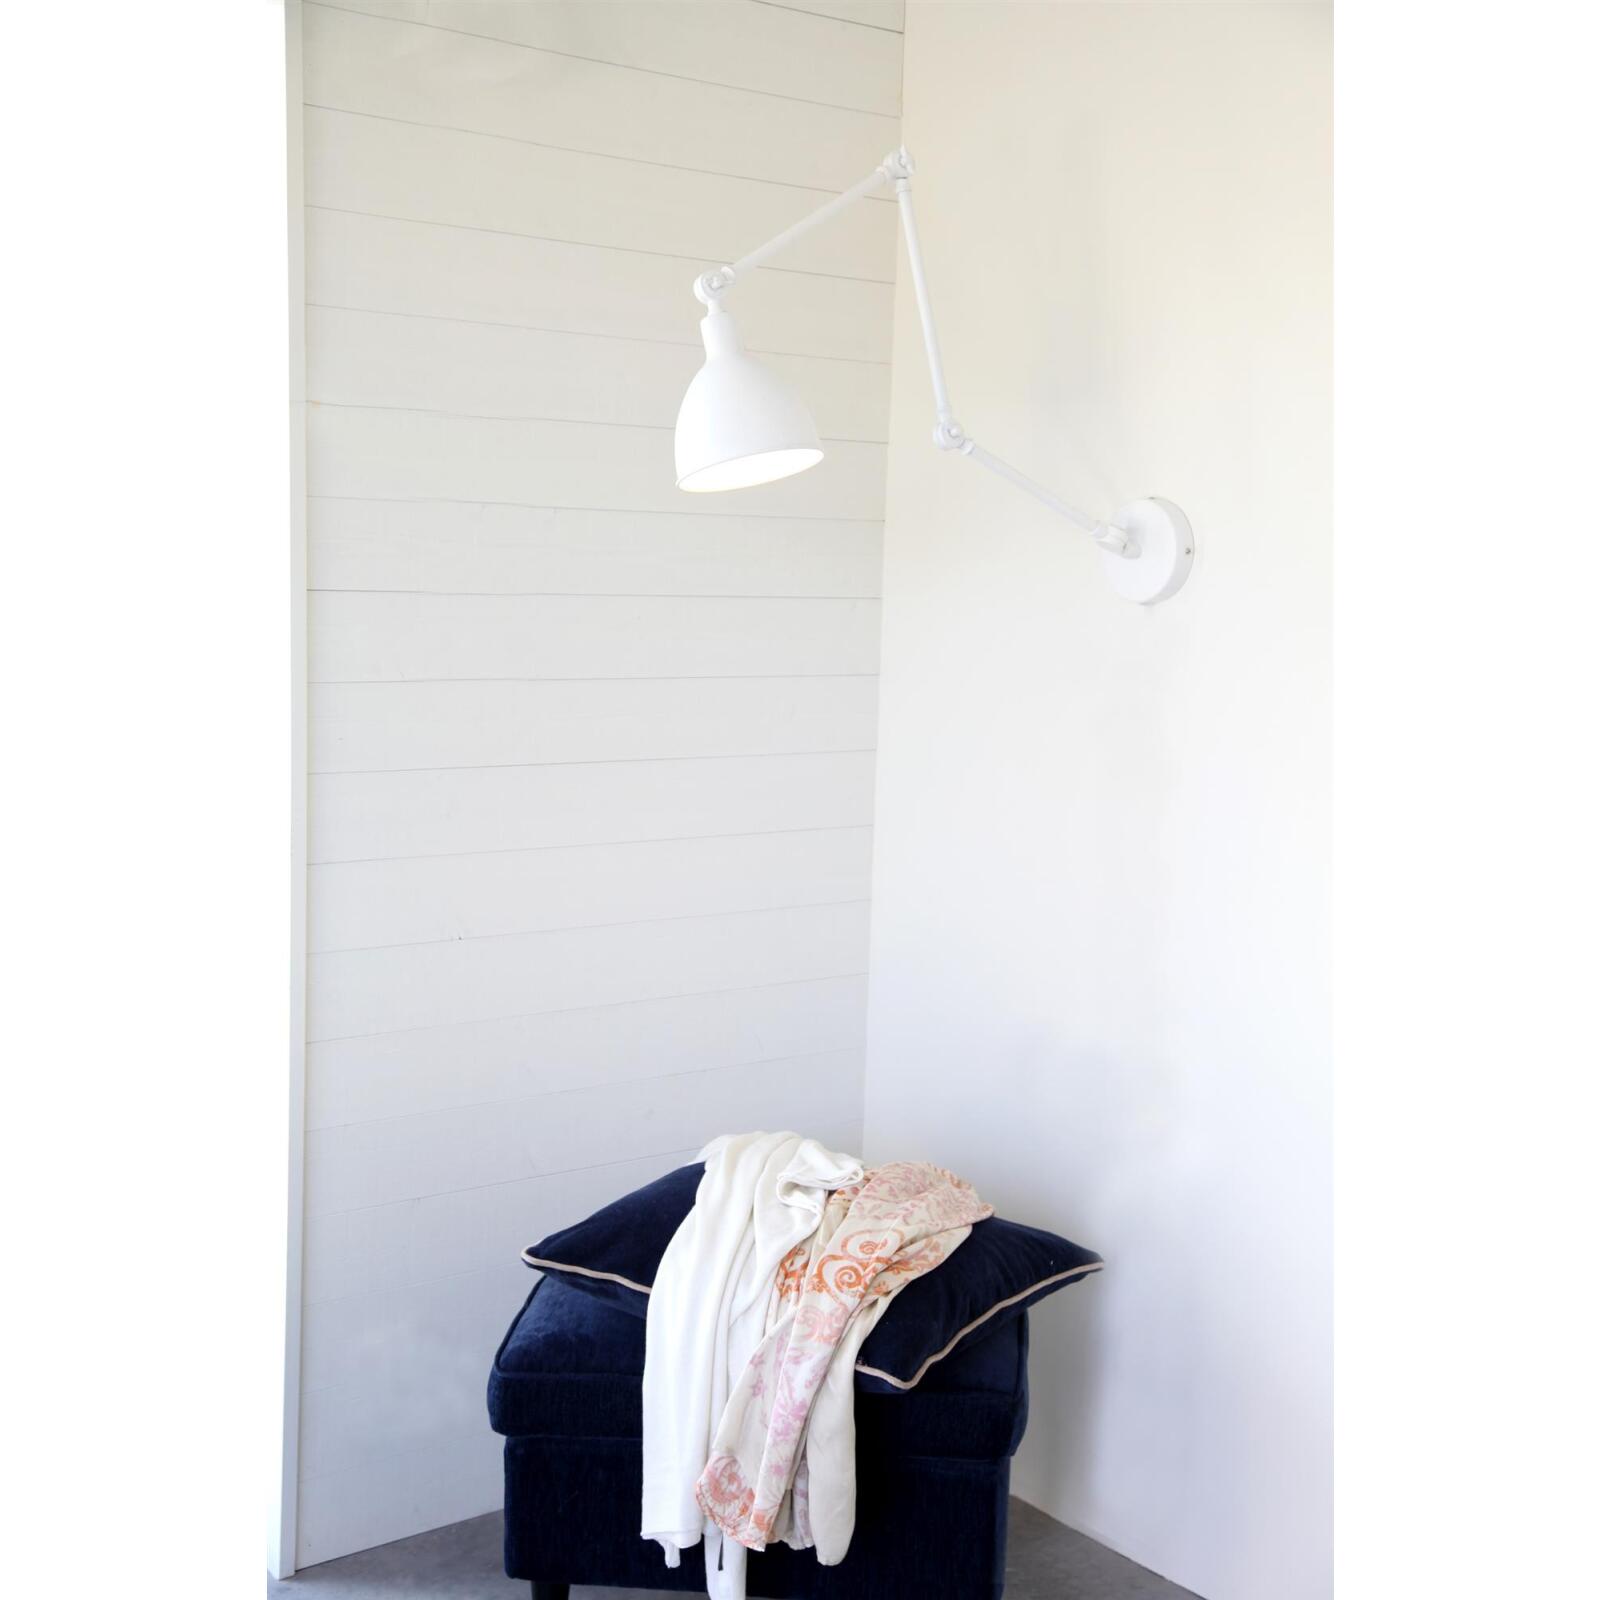 By Rydens verstellbare Wandleuchte E27 Onlineshop & Leuchten Länge Bazar - Lampen weiß Schalter mit 122cm